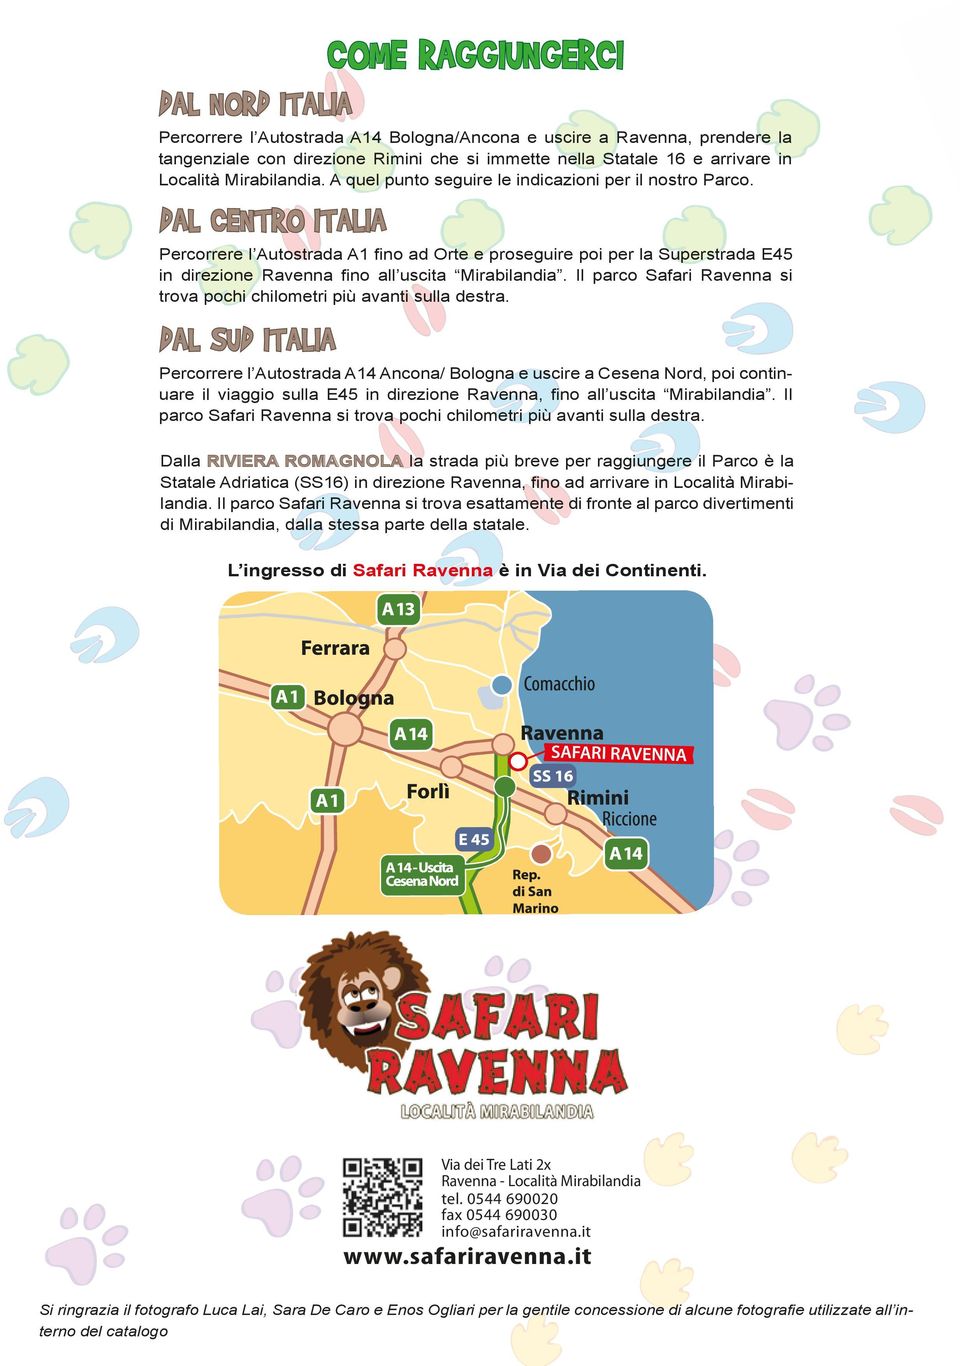 DAL CENTRO ITALIA Percorrere l Autostrada A1 fino ad Orte e proseguire poi per la Superstrada E45 in direzione Ravenna fino all uscita Mirabilandia.